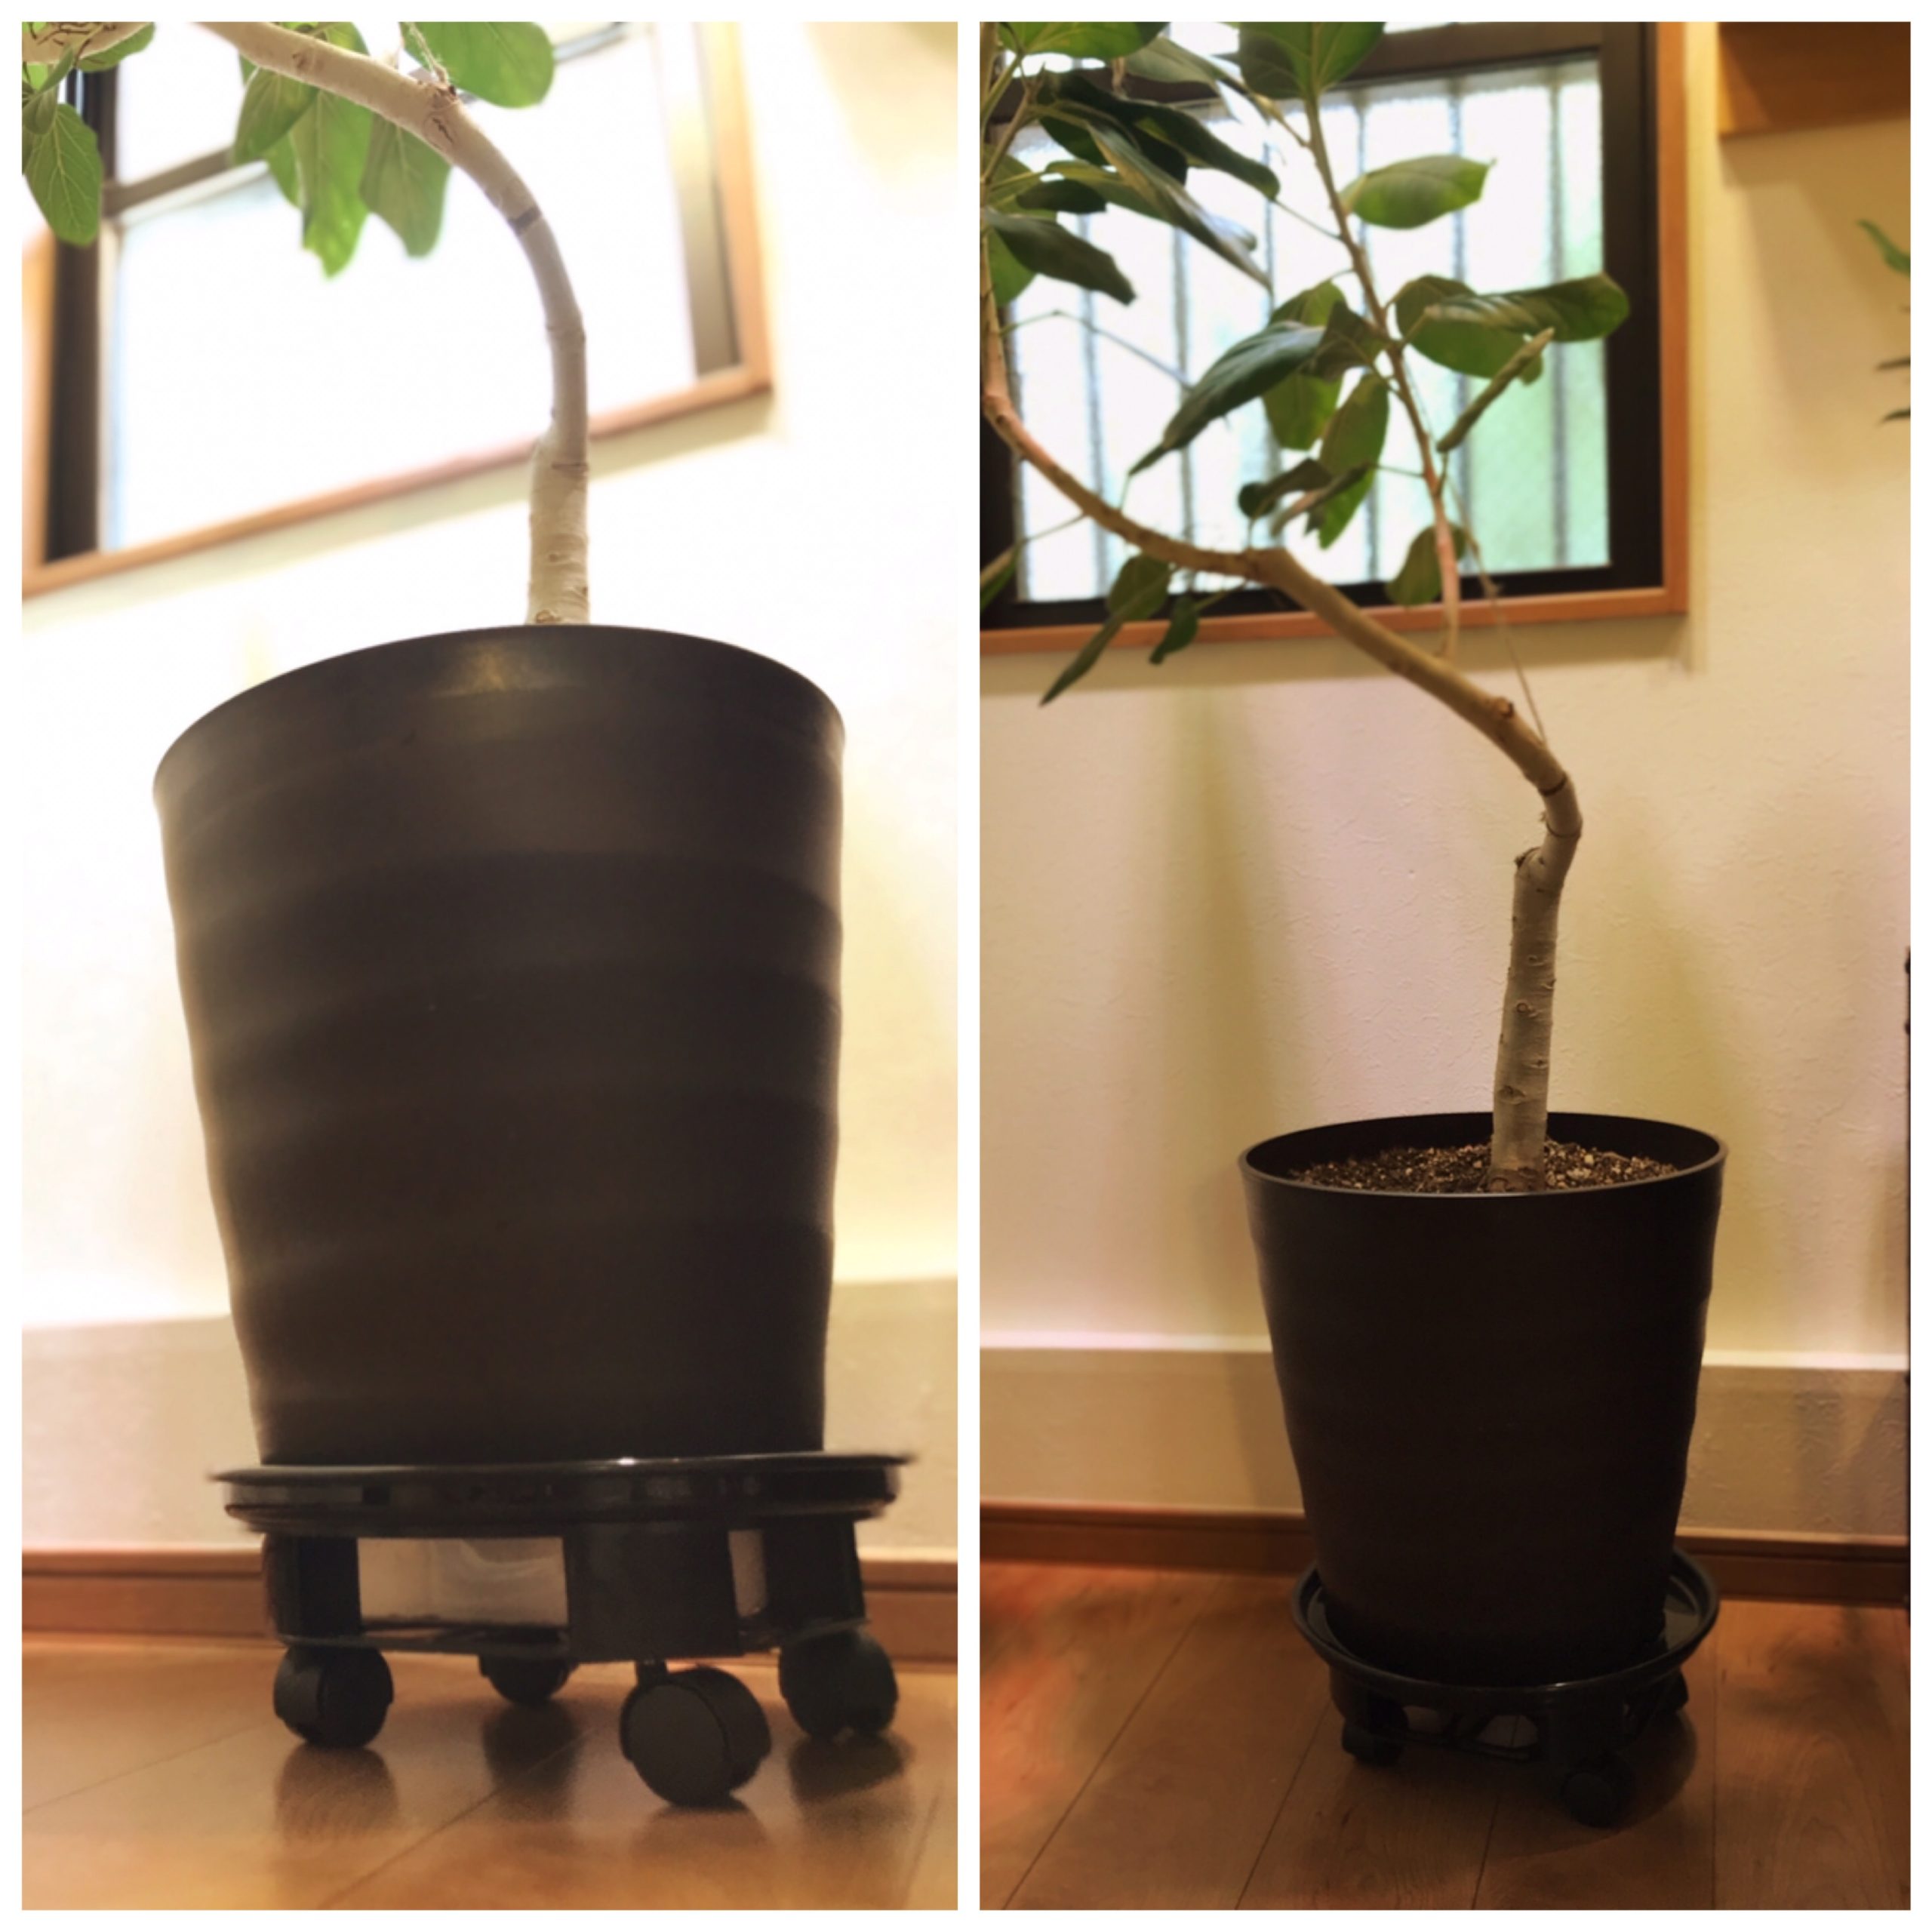 Garay植木鉢台を買ってみた 重い大型観葉植物の水やりおすすめグッズ 東京やまびこ植物園